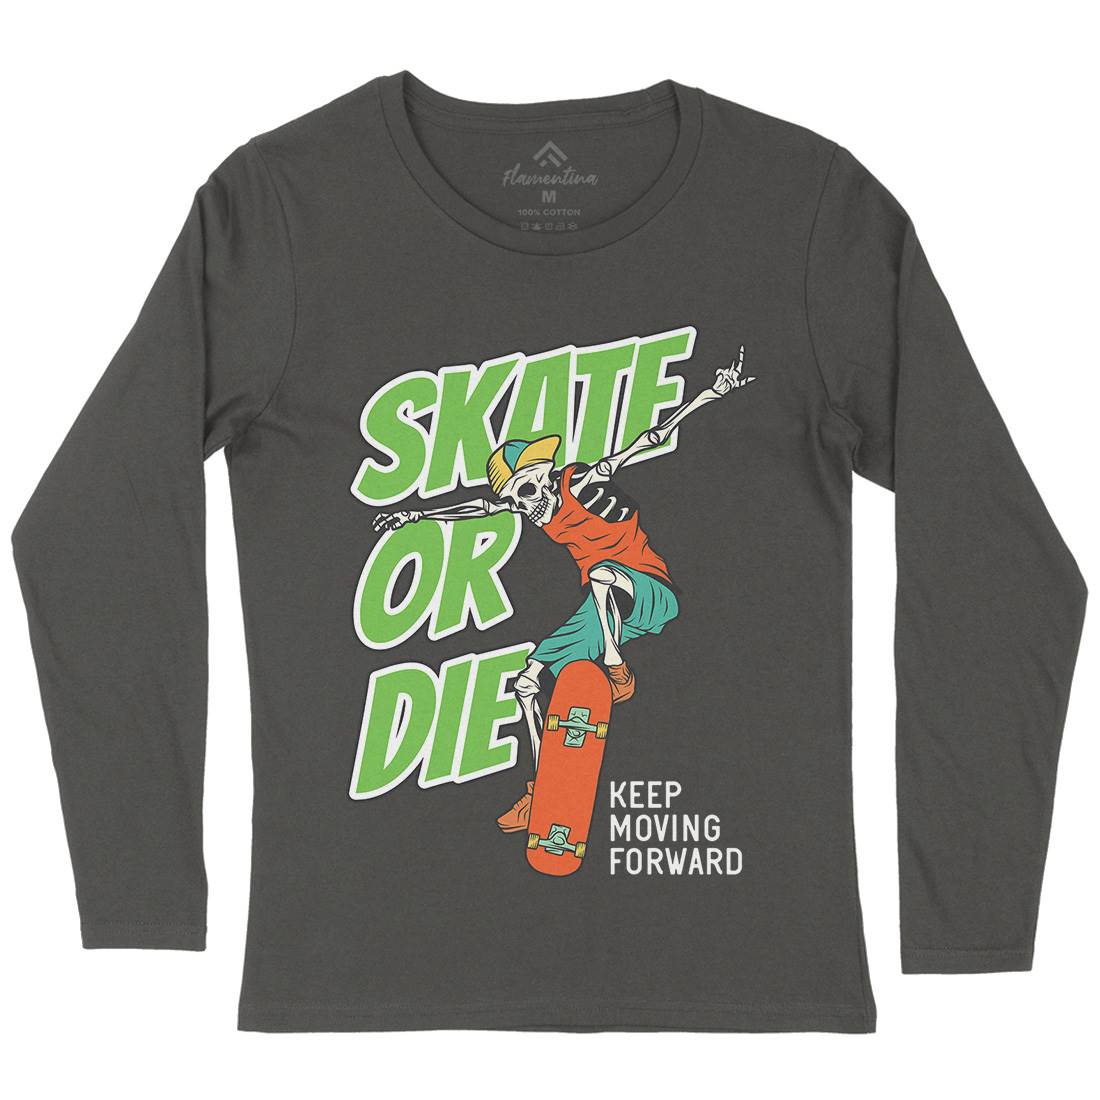 Or Die Womens Long Sleeve T-Shirt Skate D971